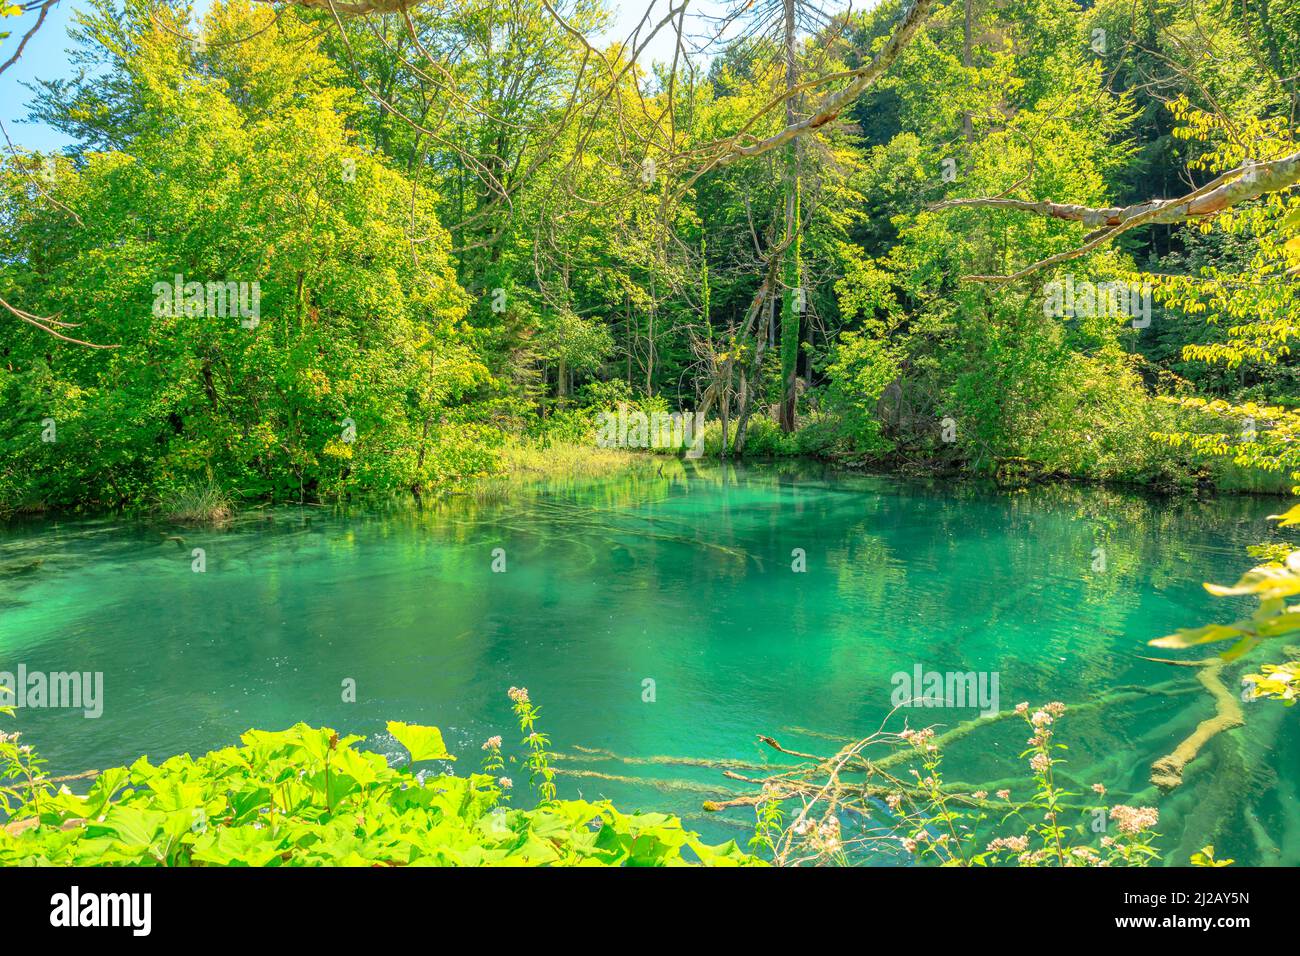 Le lac Milino Jezero du parc national des lacs de Plitvice en Croatie, dans la région de Lika. Patrimoine mondial de l'UNESCO de la Croatie appelé Plitvicka Jezera. Banque D'Images